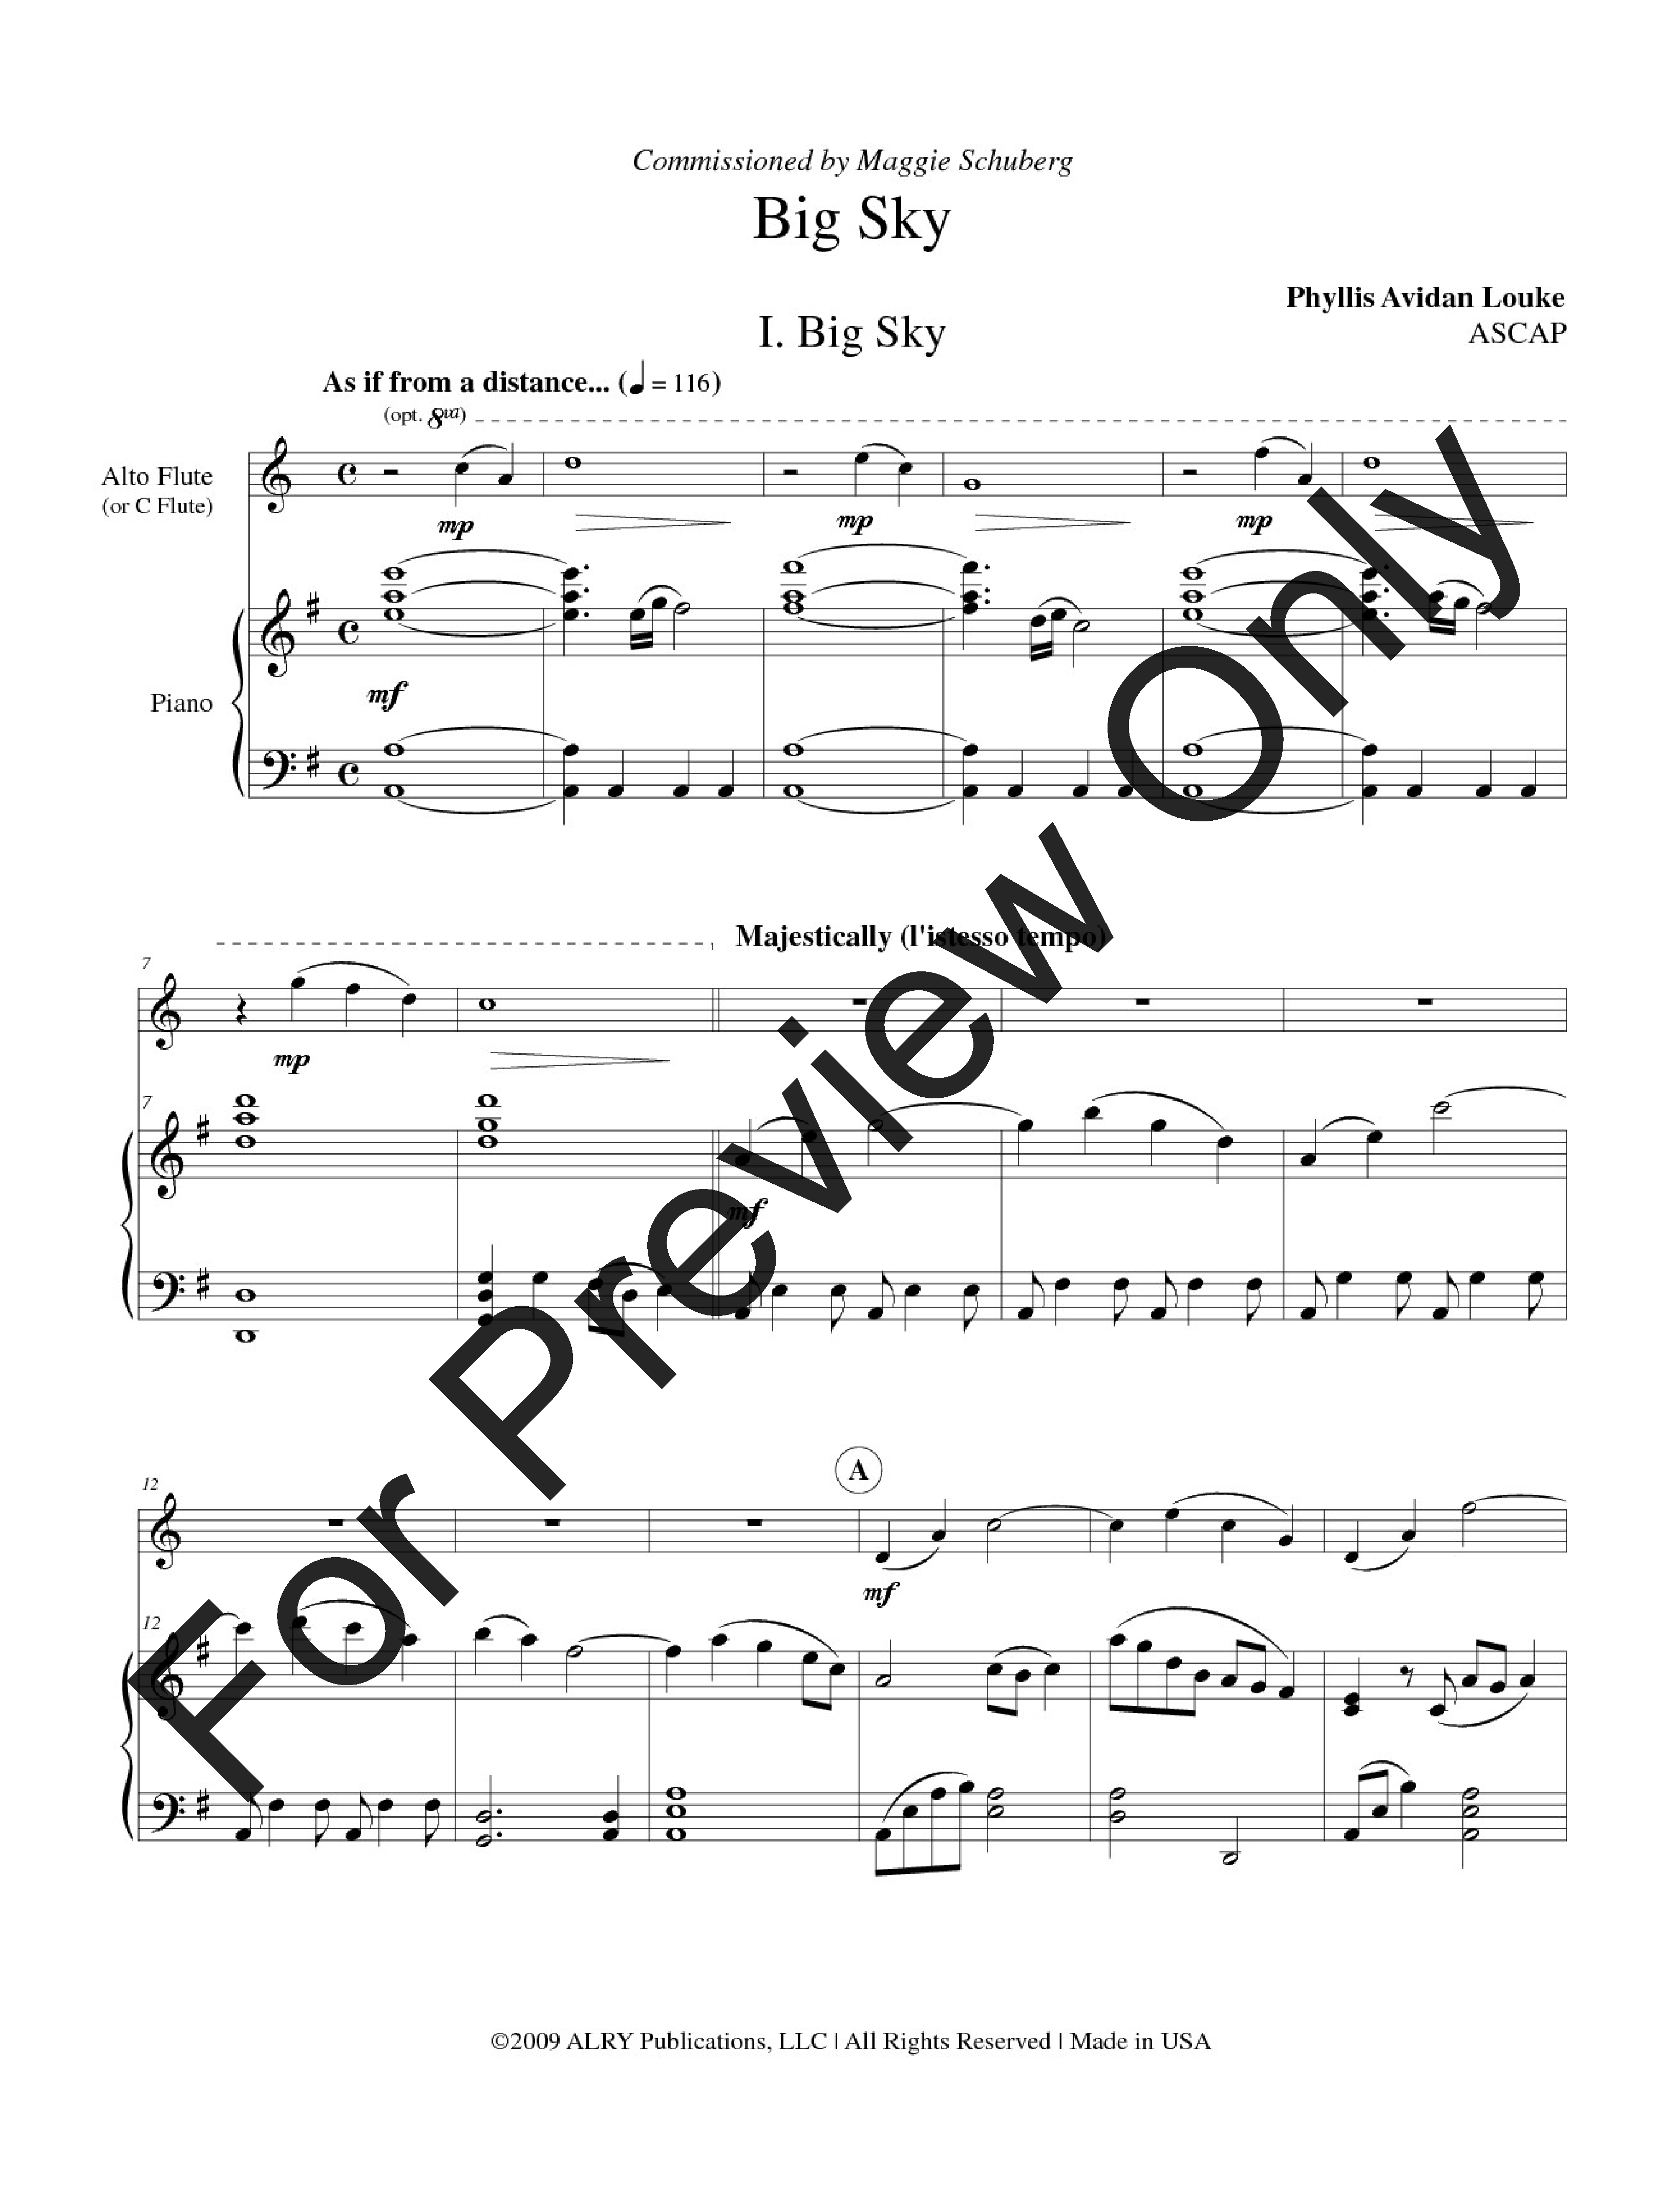 Big Sky Alto Flute and Piano opt. C flute